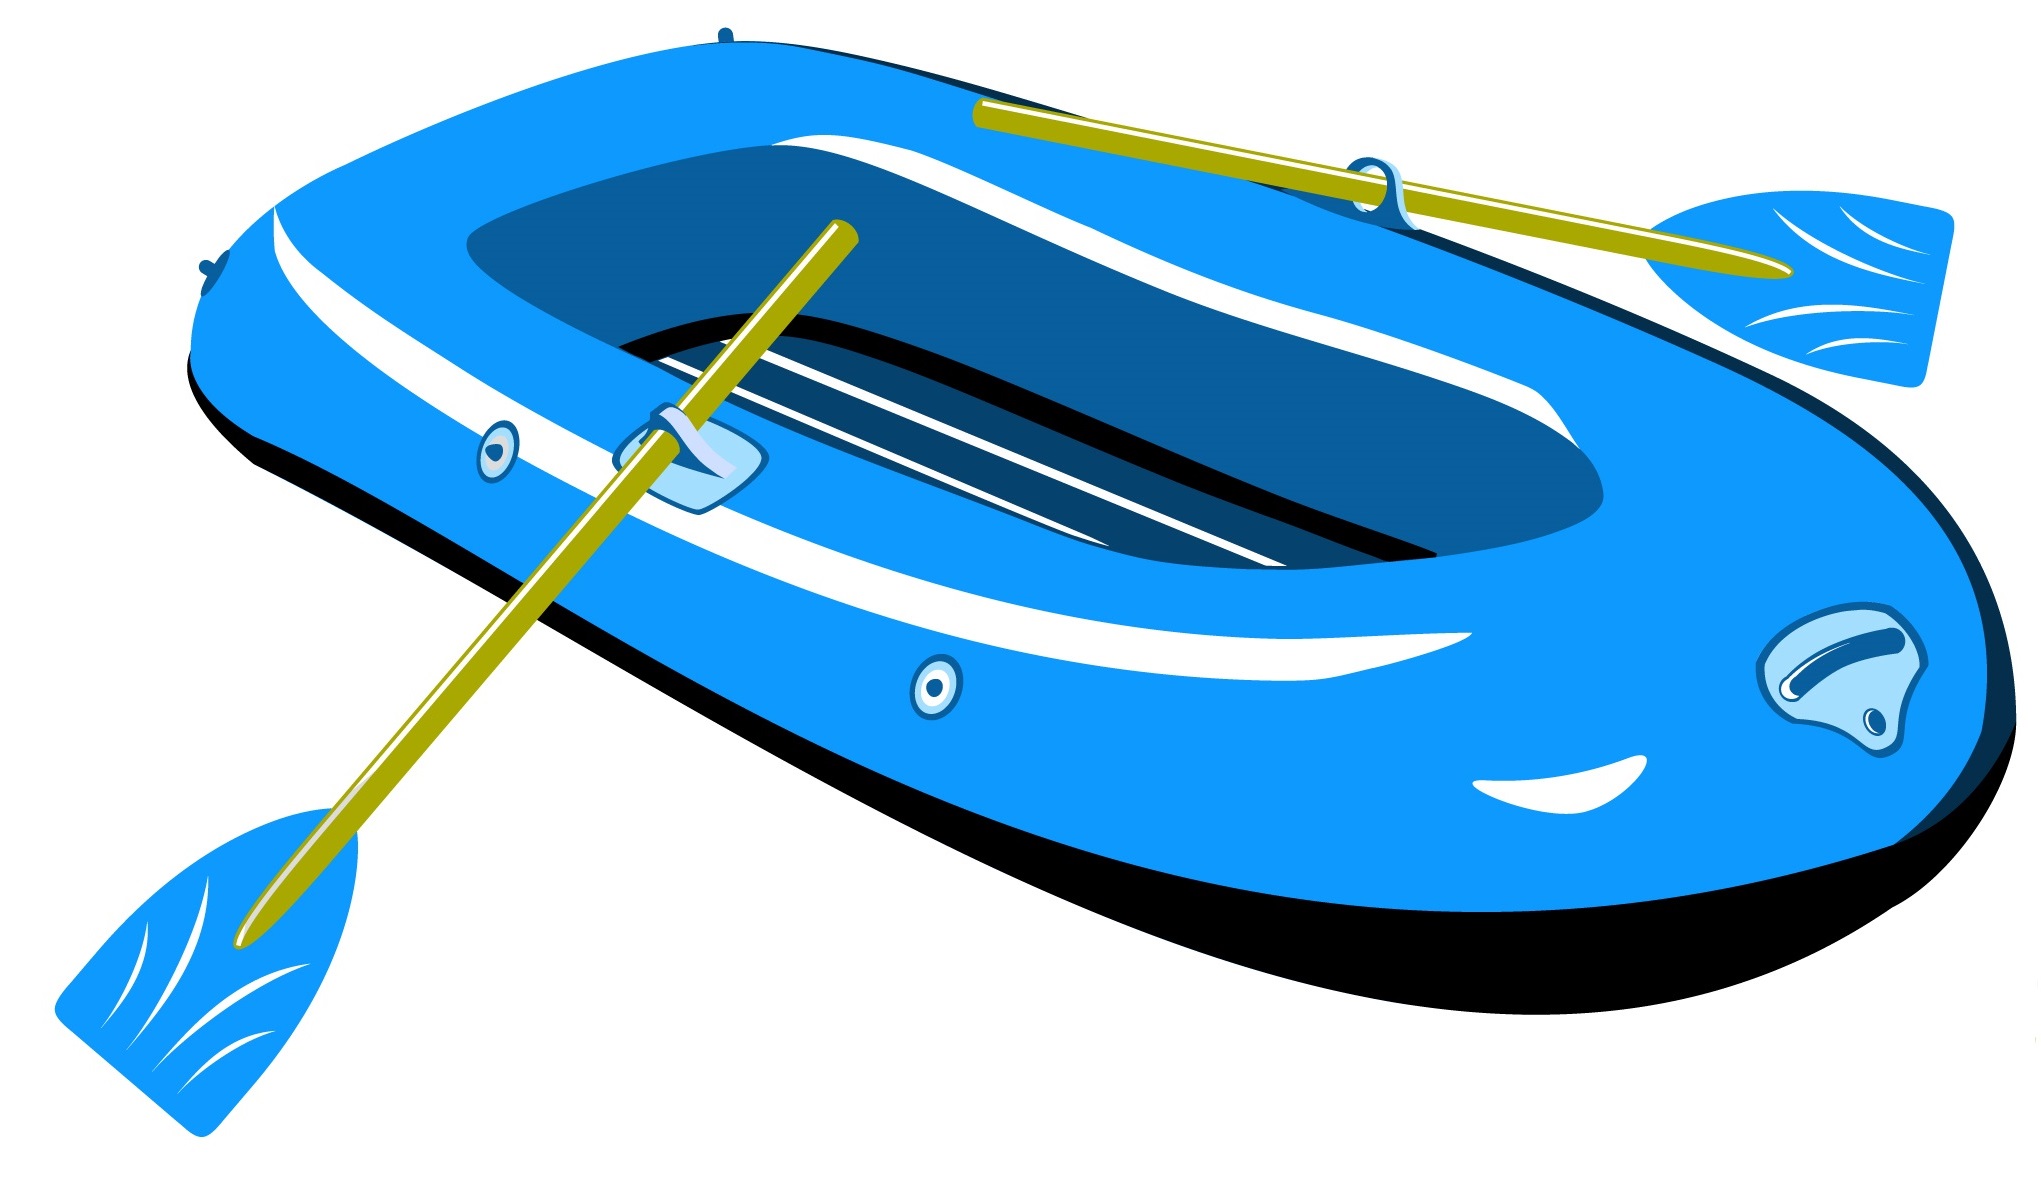 bateaux pneumatiques Antibes-reparation de bateaux Nice-paddle gonflable Monaco-jacuzzi intex Saint-Tropez-pneumatiques Fenders Alpes-Maritimes-réparation de pneumatiques Var